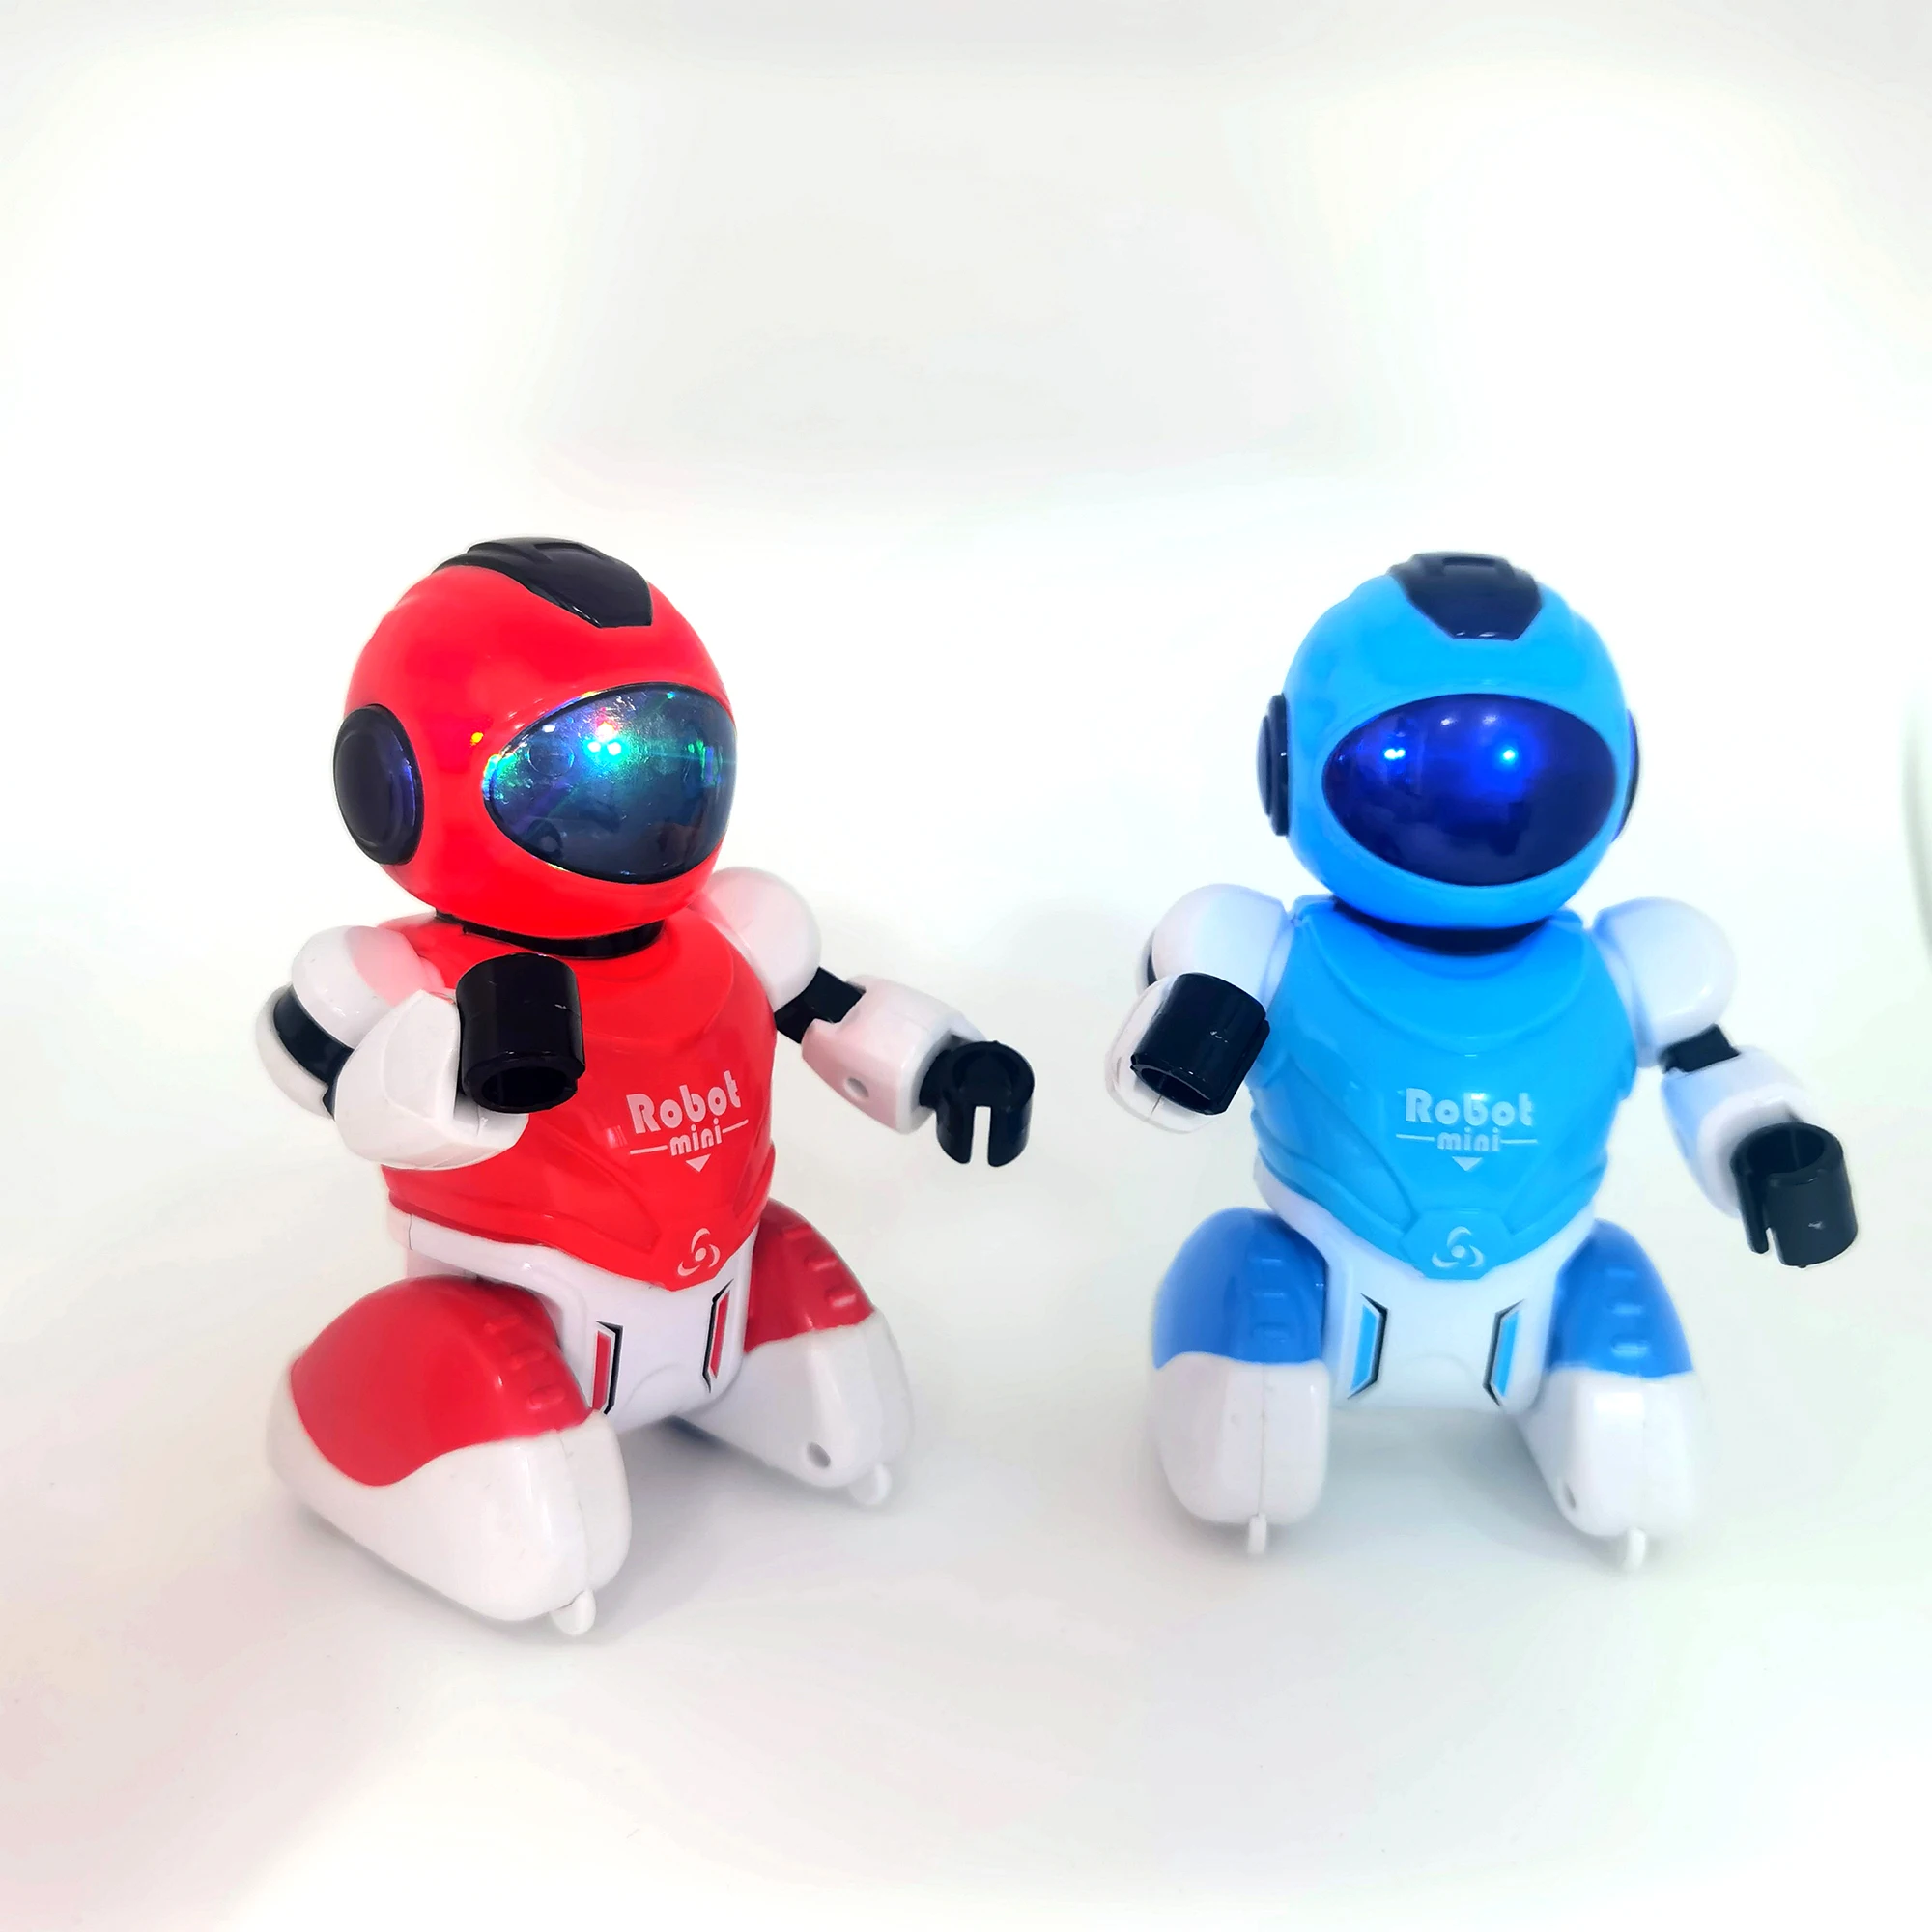 Mini Robot À Télécommande, Jouet Pour Enfant, Action Intelligente